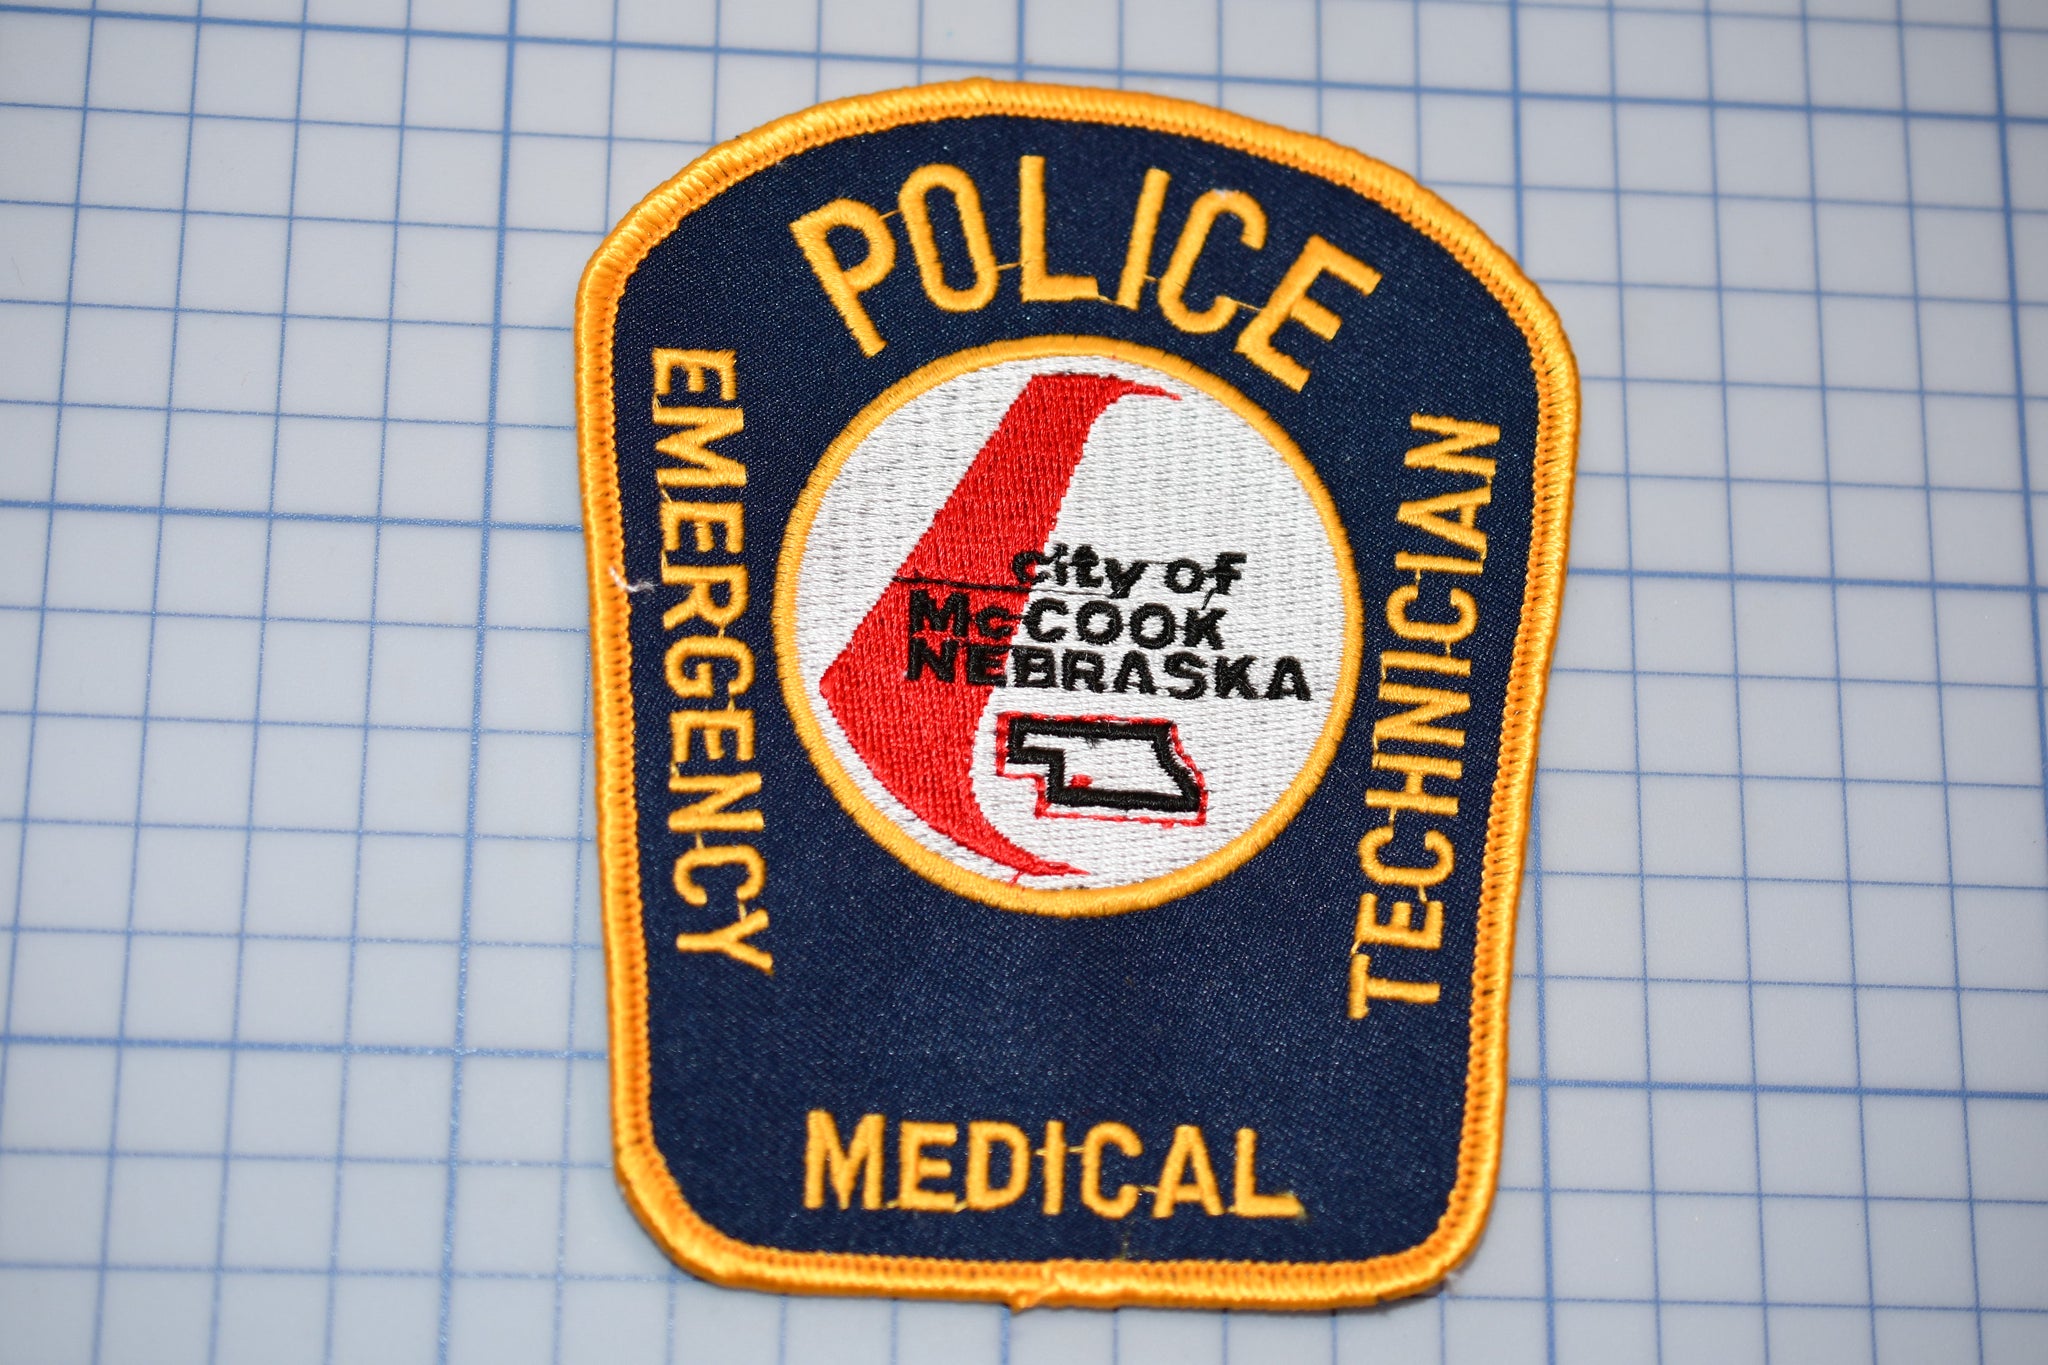 City Of McCook Nebraska Police EMT Patch (B29-339)